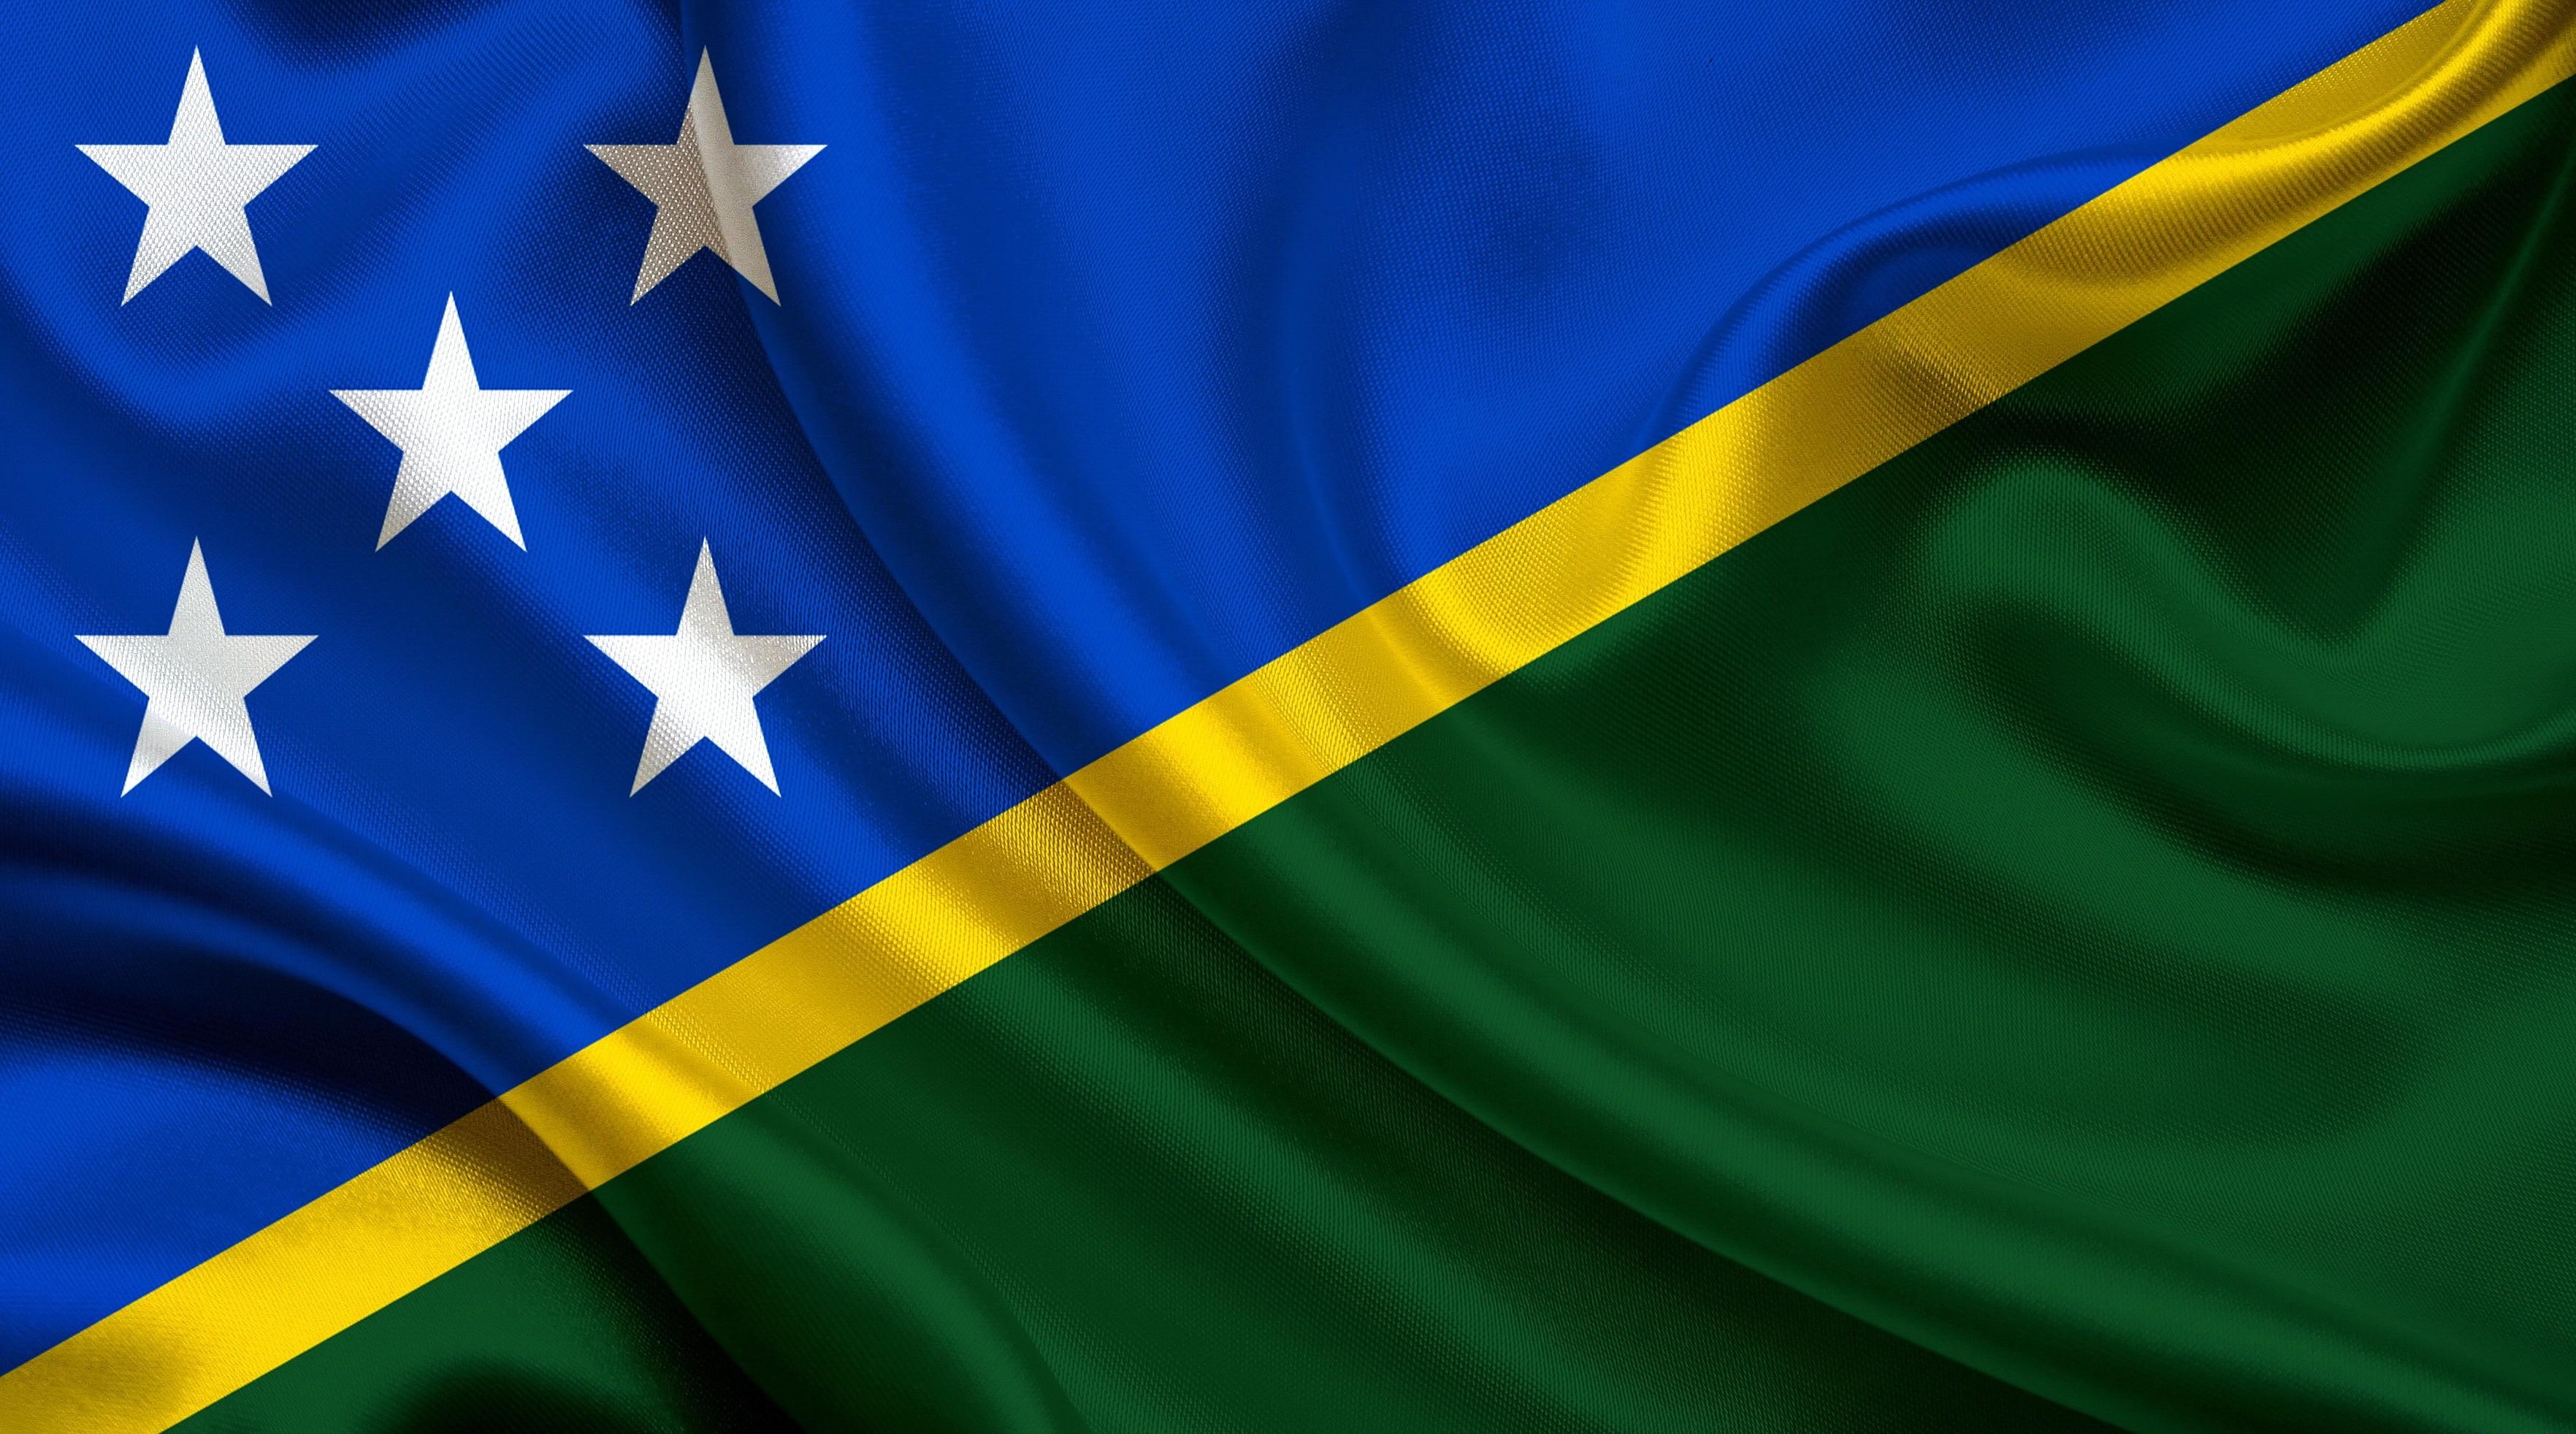 Флаг Соломоновых островов